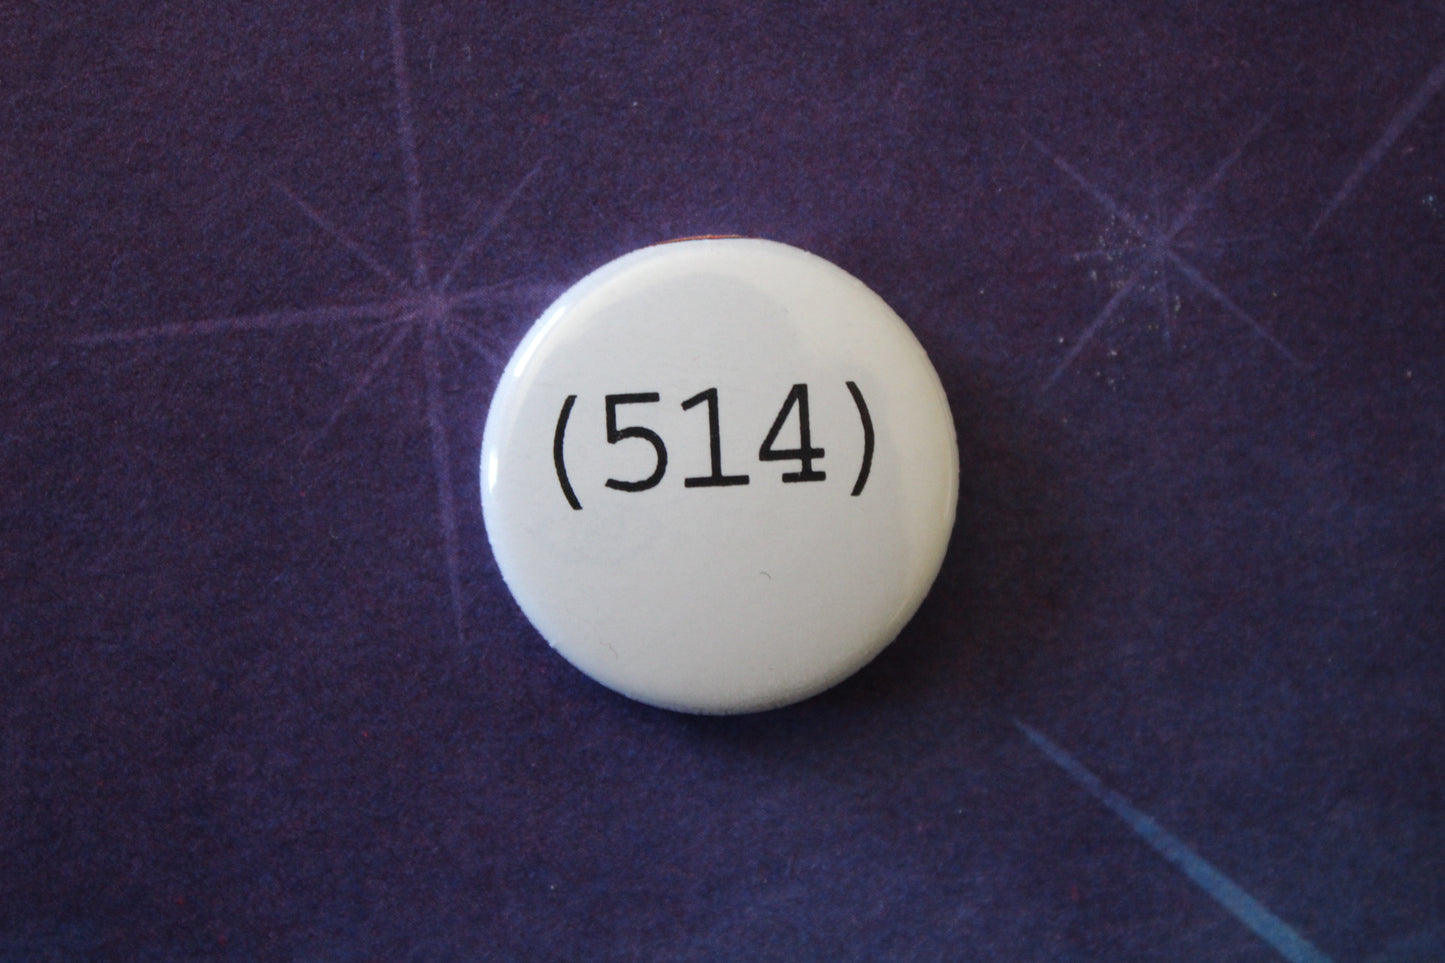 Button - (514)